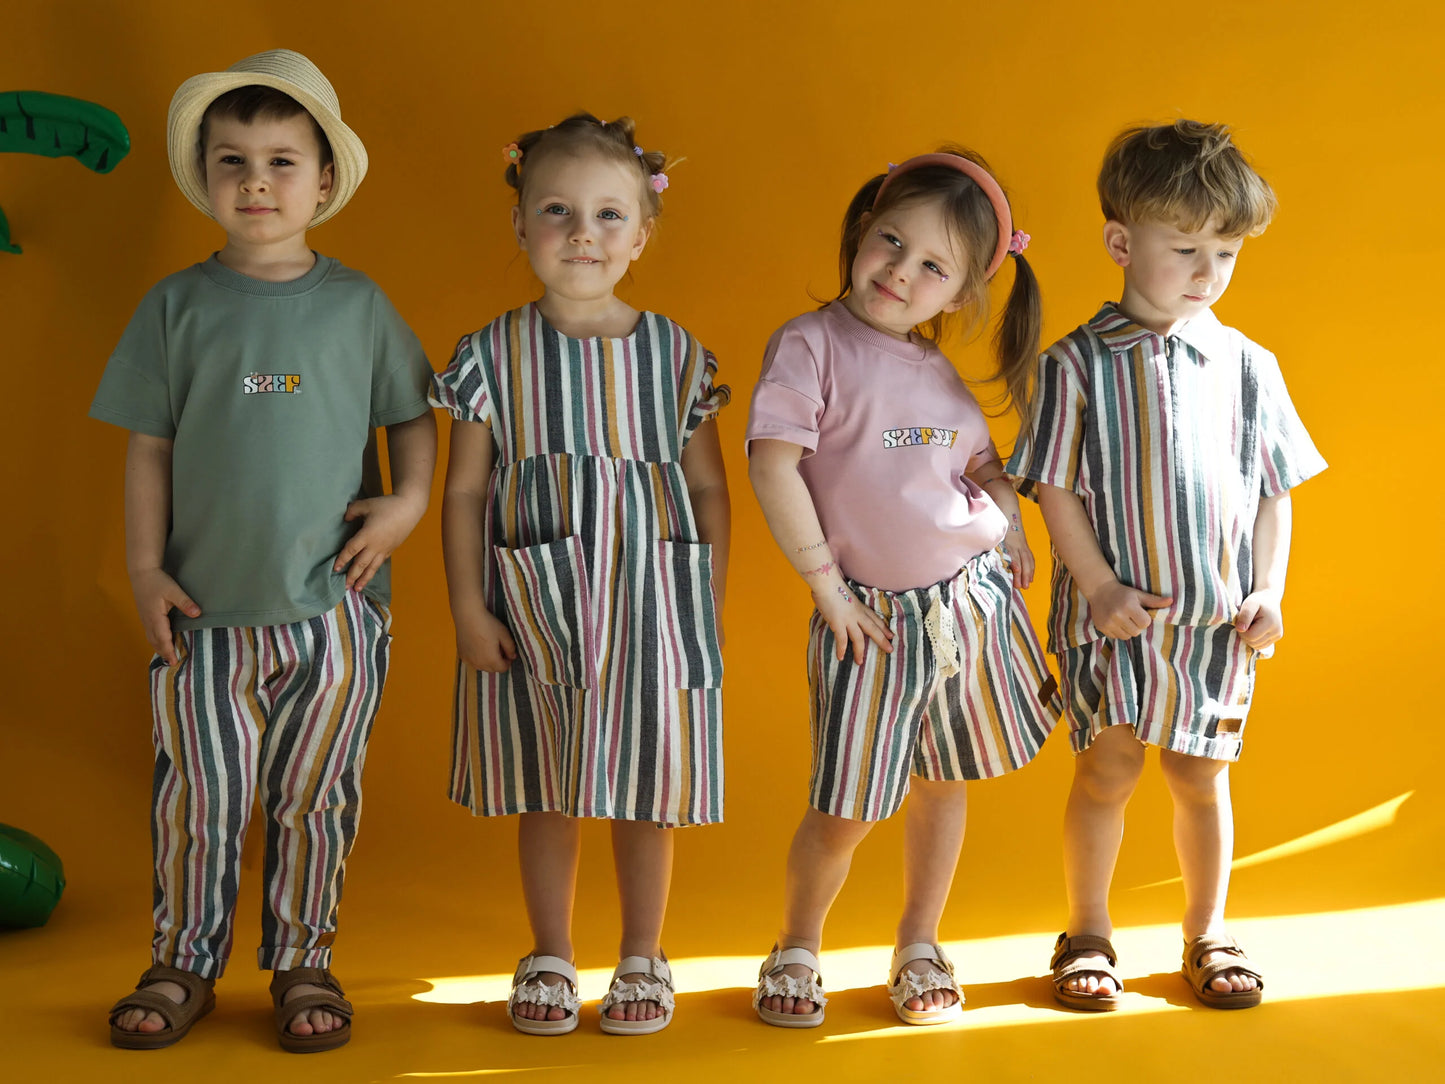 Tshirt dziecięcy SZEF ( 3 kolory)